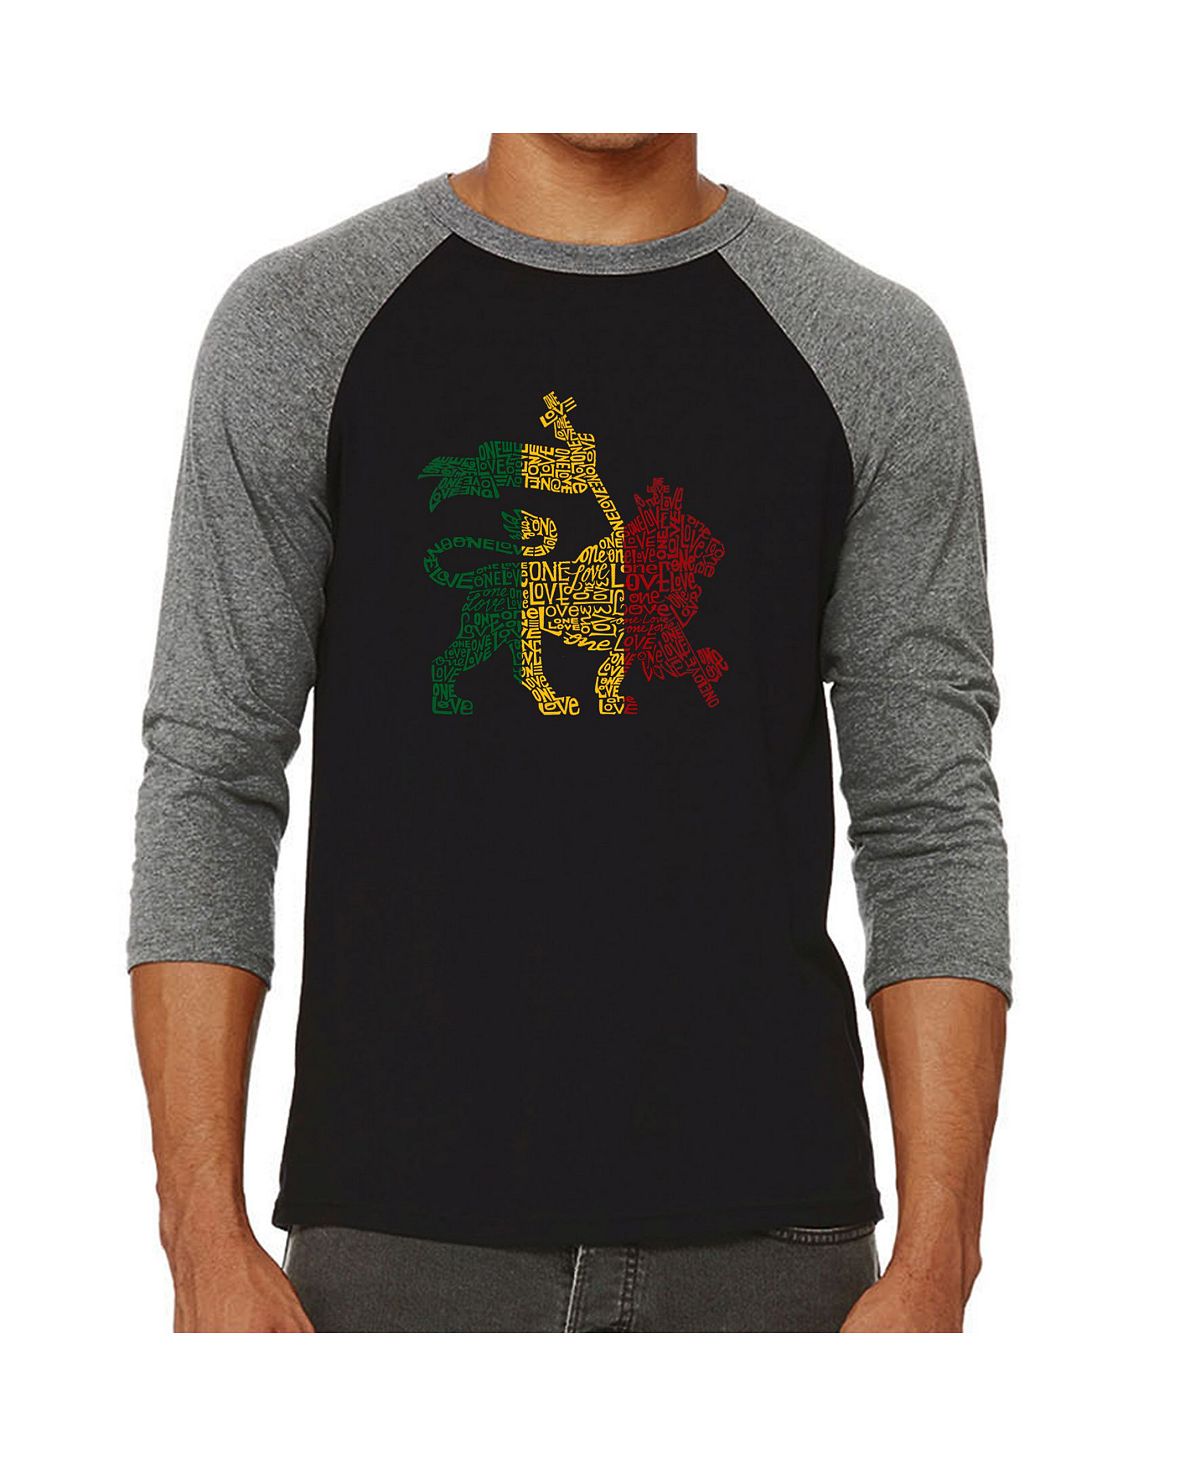 Мужская футболка с принтом lion и регланом word art LA Pop Art, серый мужская футболка с принтом пиратский череп и регланом word art la pop art черный